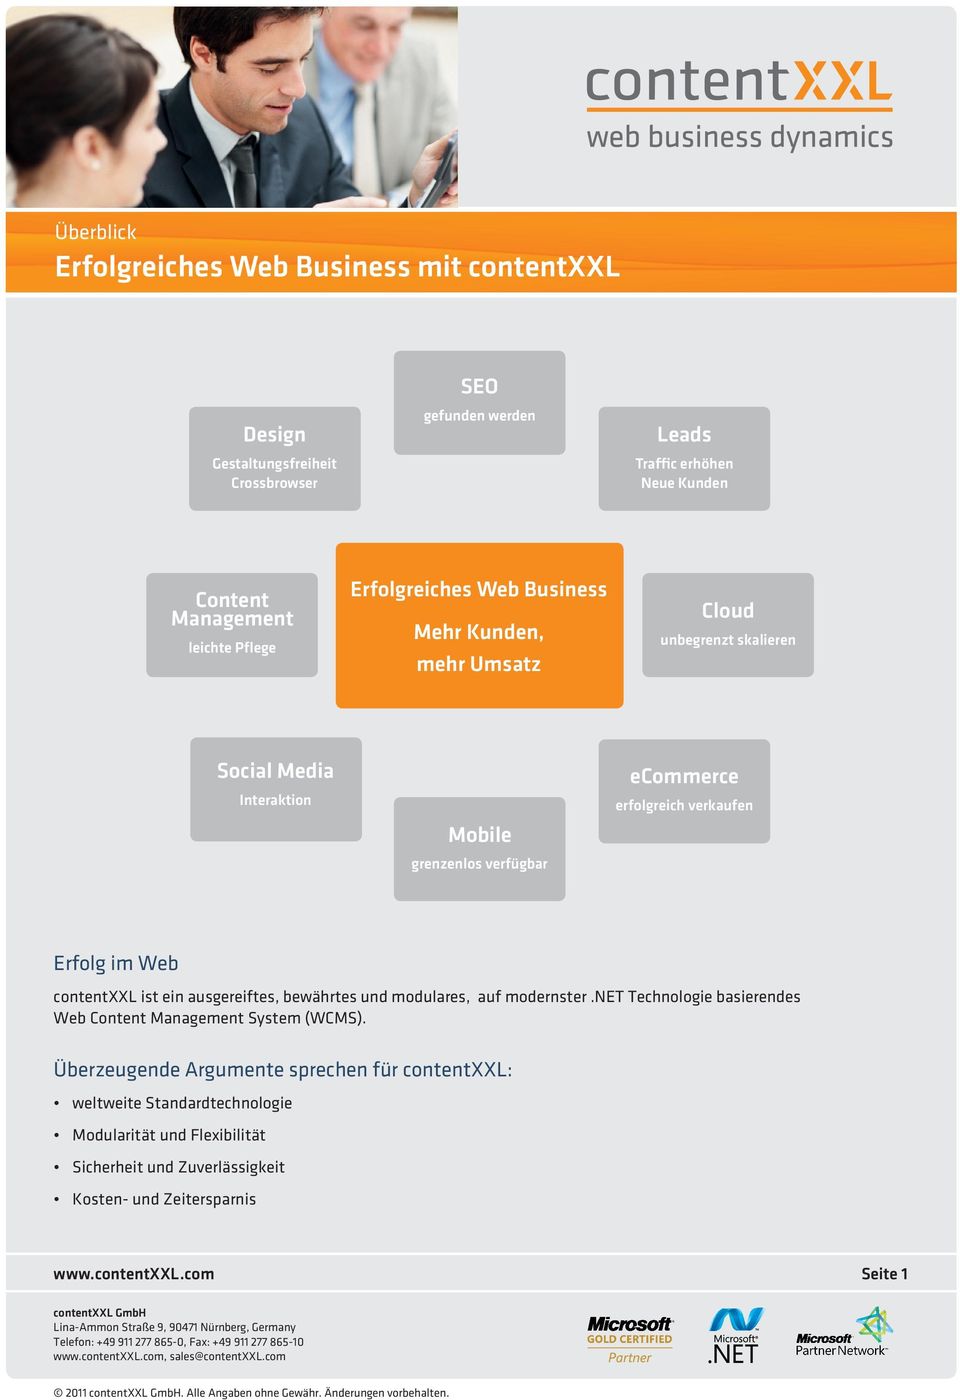 contentxxl ist ein ausgereiftes, bewährtes und modulares, auf modernster.net Technologie basierendes Web Content Management System (WCMS).